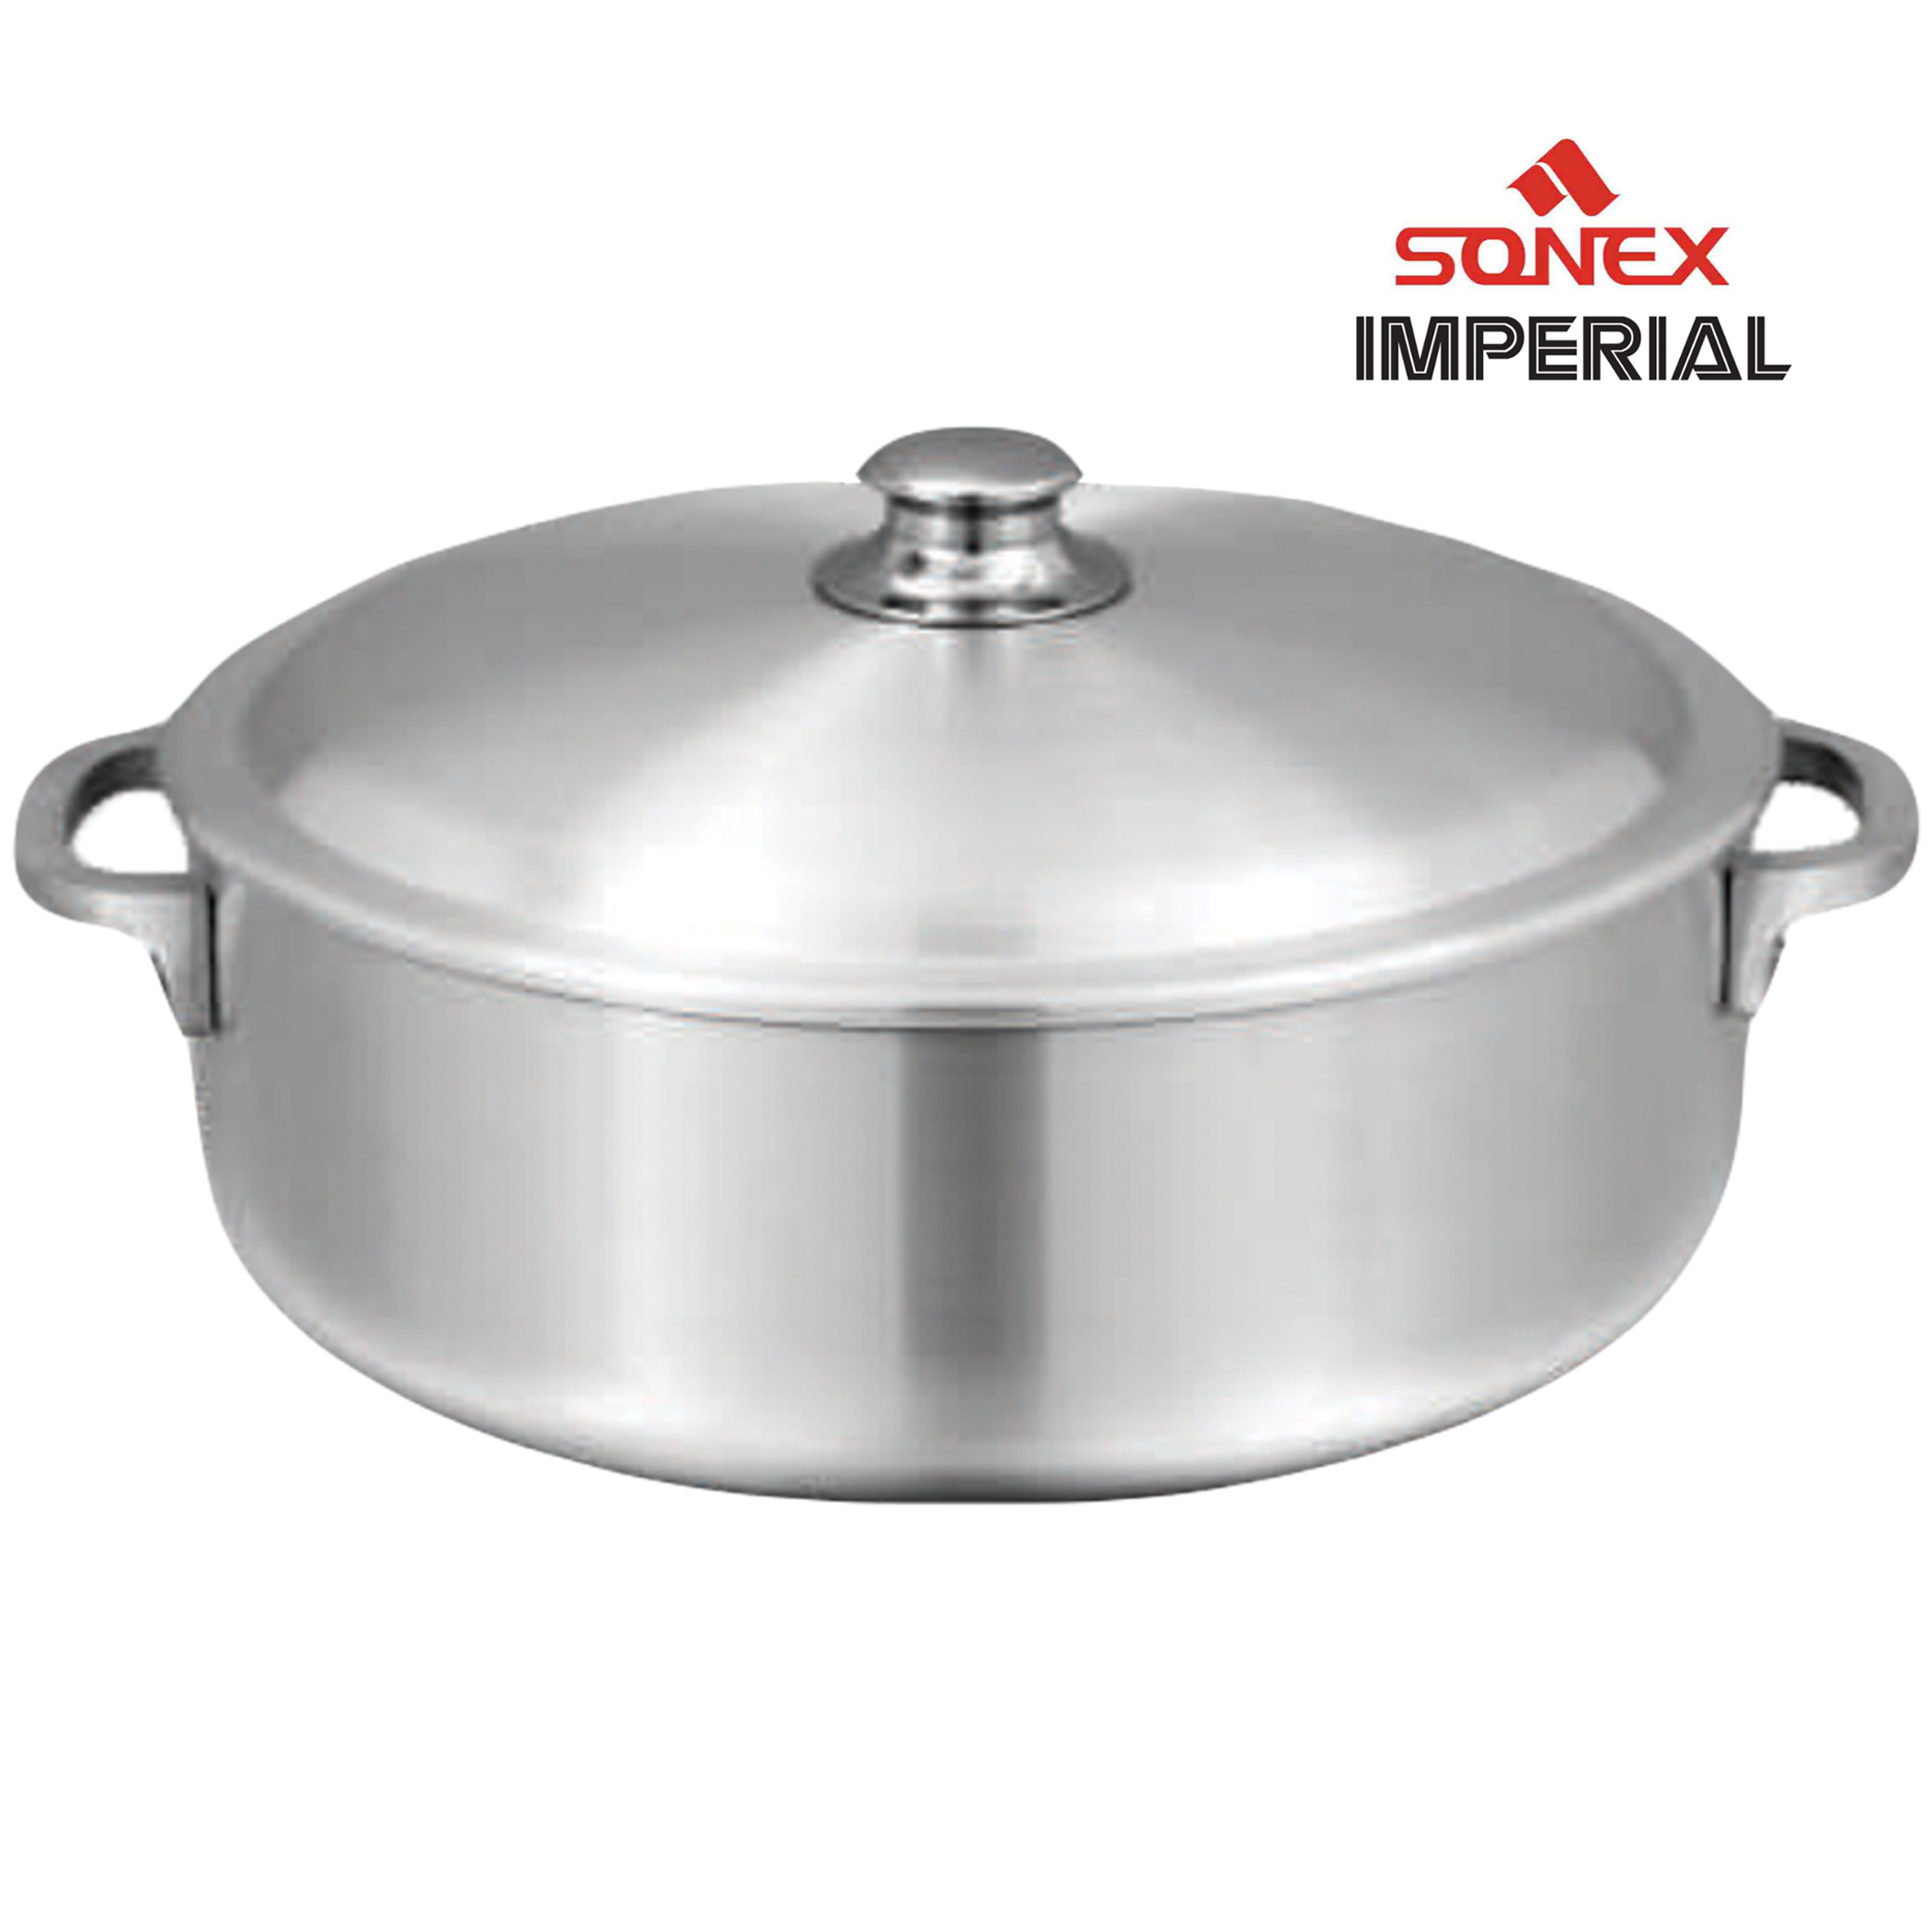 Sonex Imperial Aluminum Pot 12.5 Liters